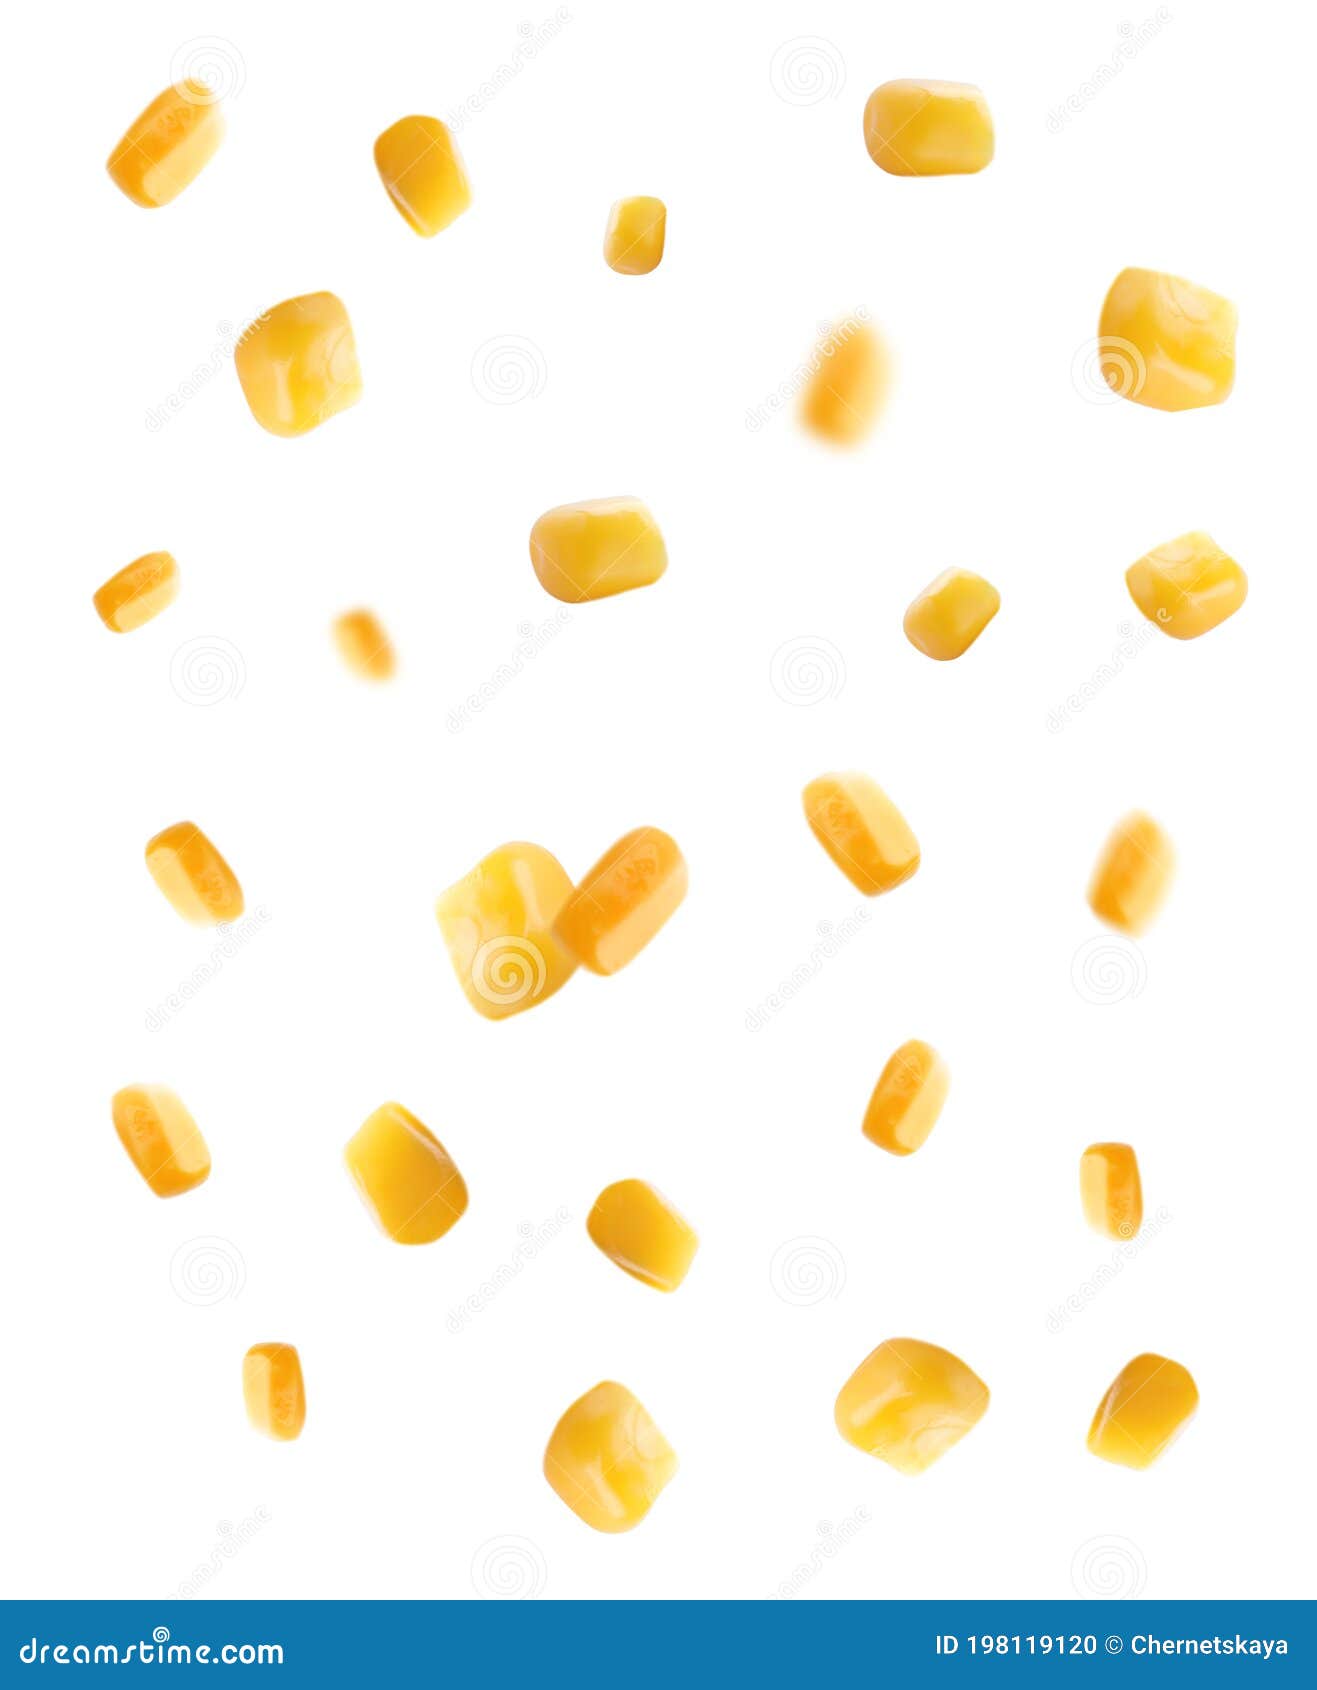 Sweet Corn Kernels Falling on White Background Stock Photo - Image of ...